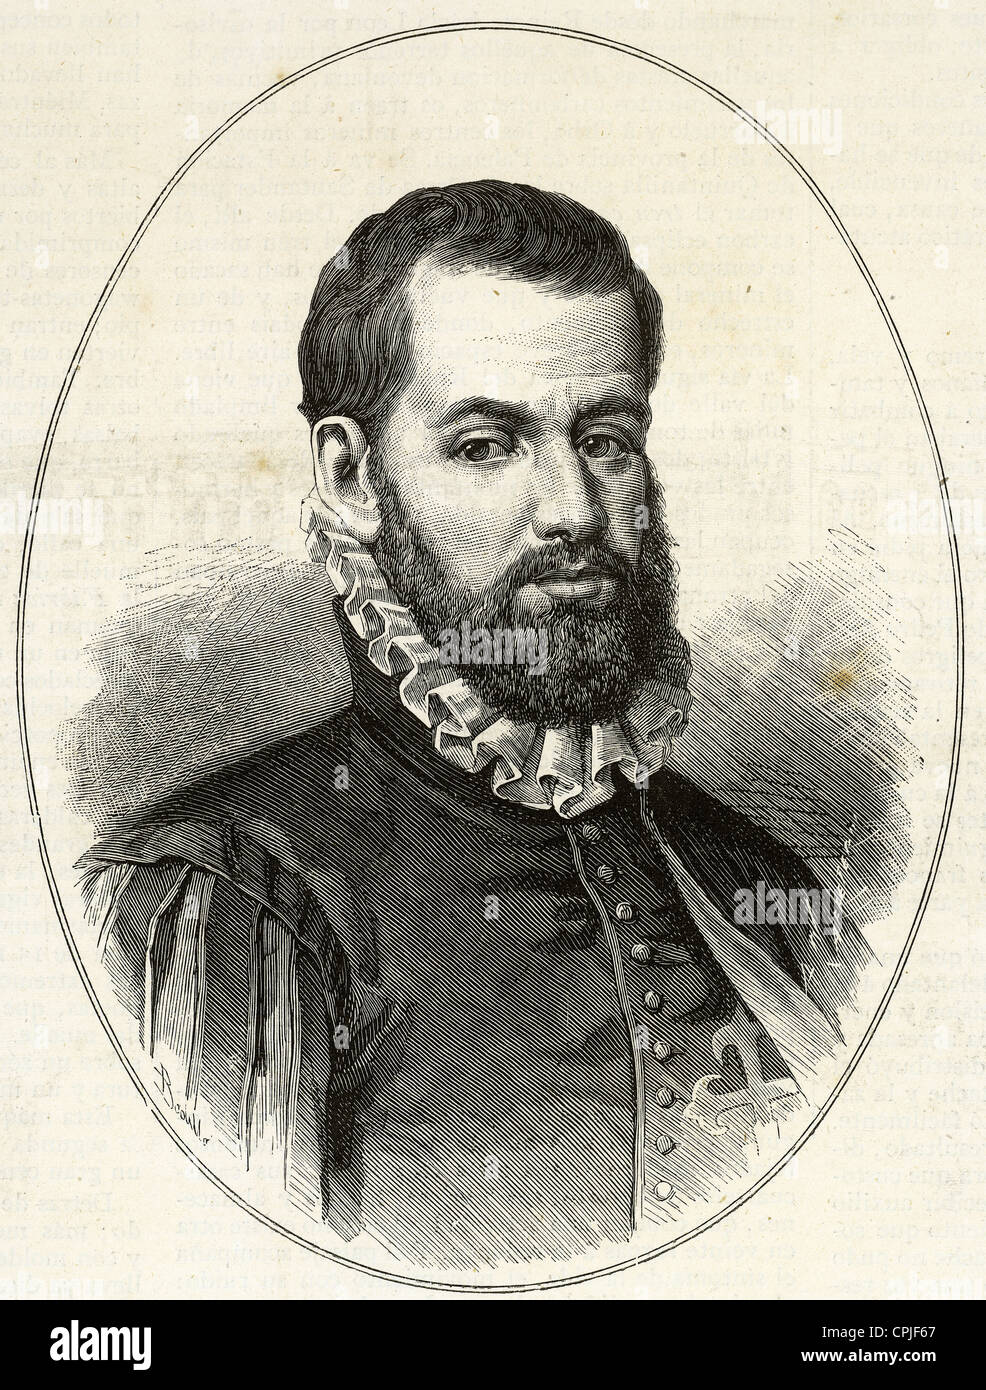 Pedro Menendez de Aviles (1519-1574). Officier de la marine espagnole et conquérant. La gravure à l'espagnol et l'American Illustration, 1880. Banque D'Images